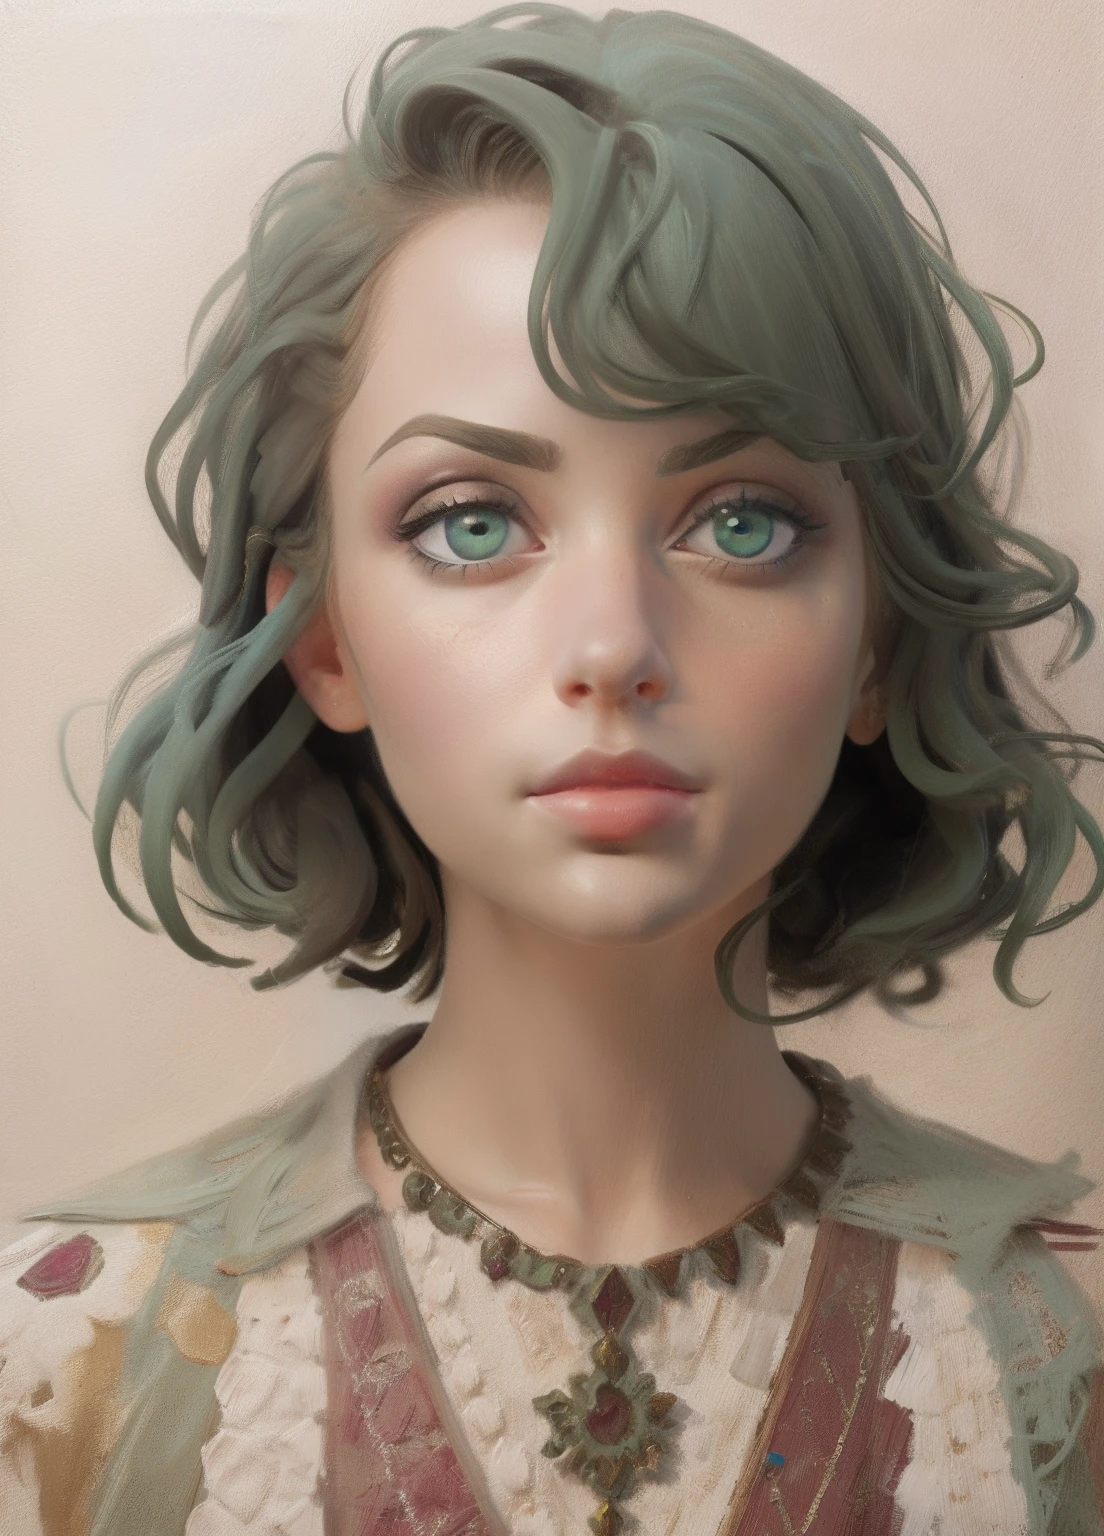 1個女孩, 肖像, 油畫, 現代的, 现实比例, 深綠色的眼睛, 漂亮的臉蛋, 對稱臉, 對稱的眼睛, 動態姿勢, 錯綜複雜, 錯綜複雜 details, 銳利的焦點